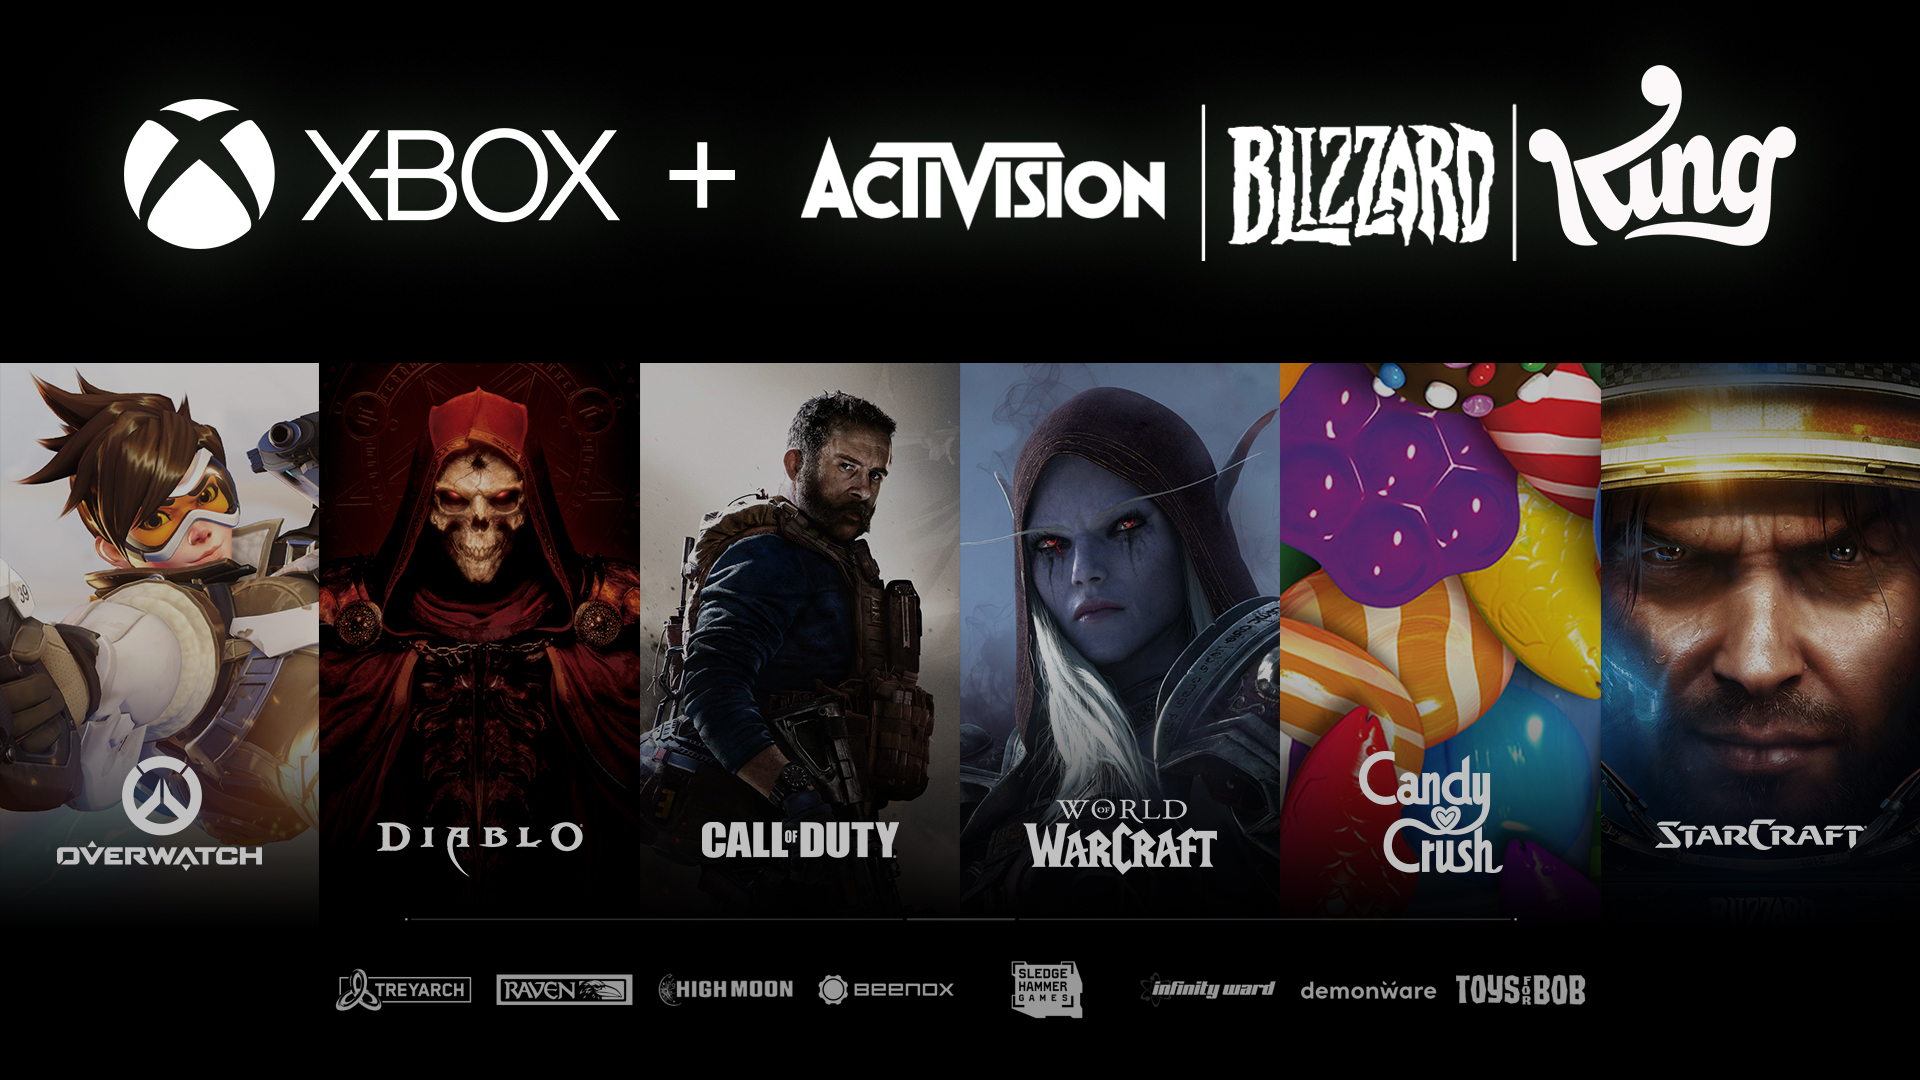 Diablo et Call of Duty bientôt exclusifs à Xbox ? Microsoft se paye Activision Blizzard